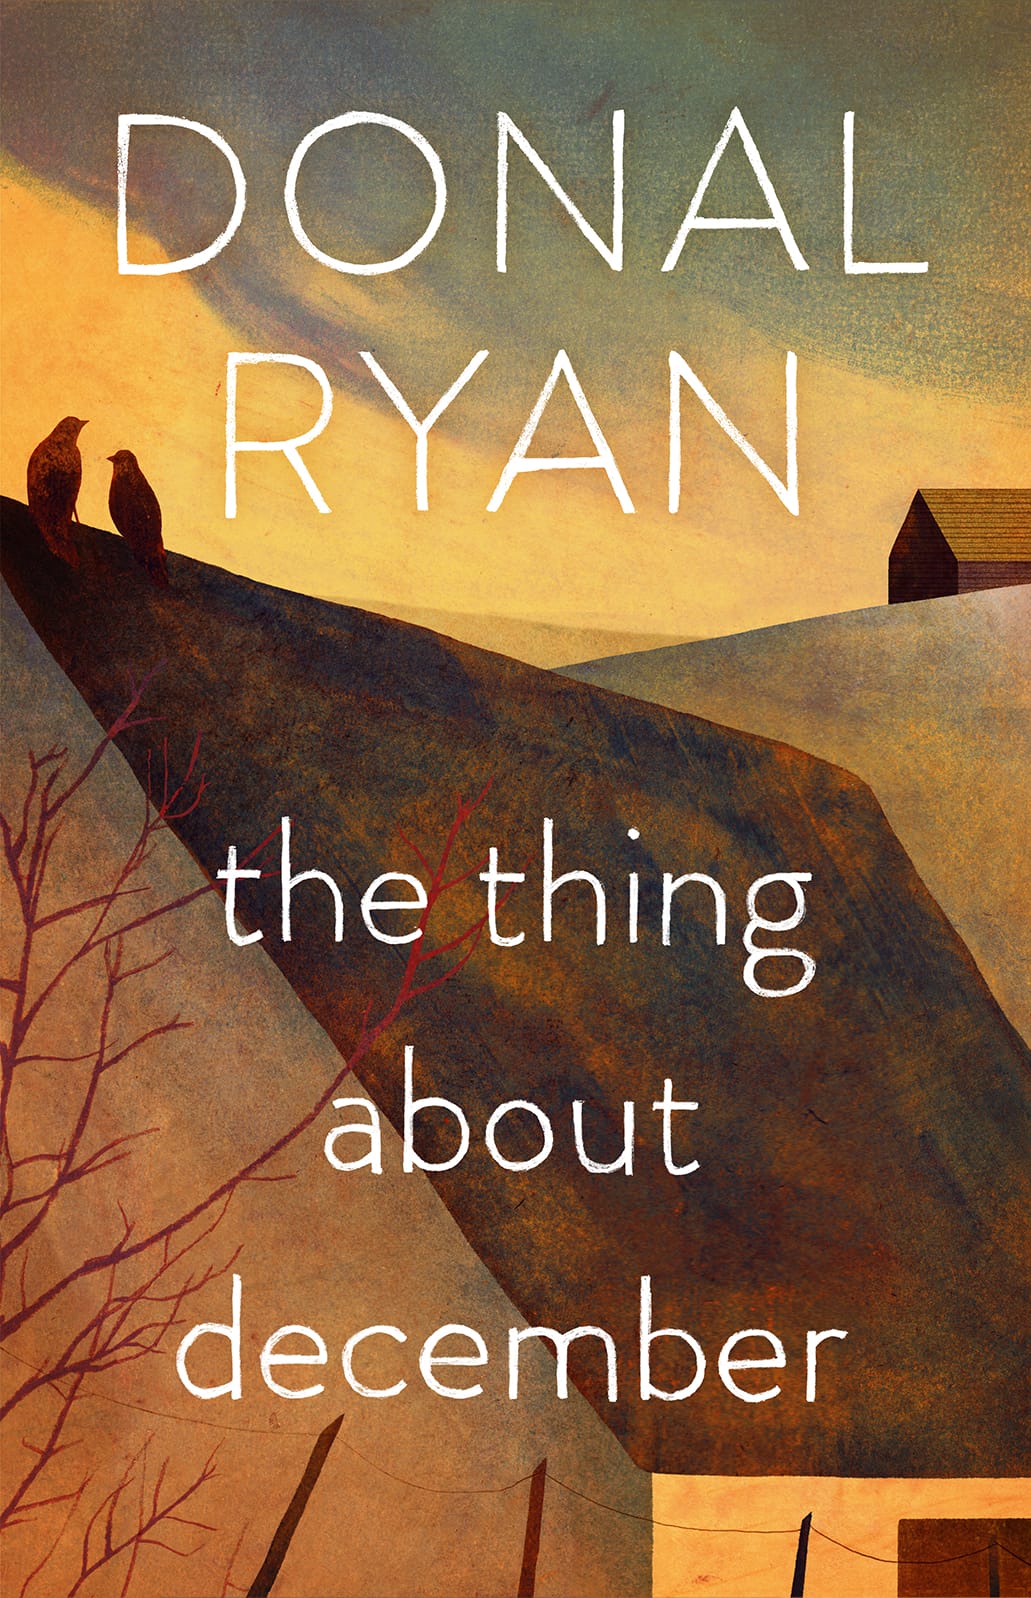 Couverture de "The thing about décembre" de Donal Ryan.